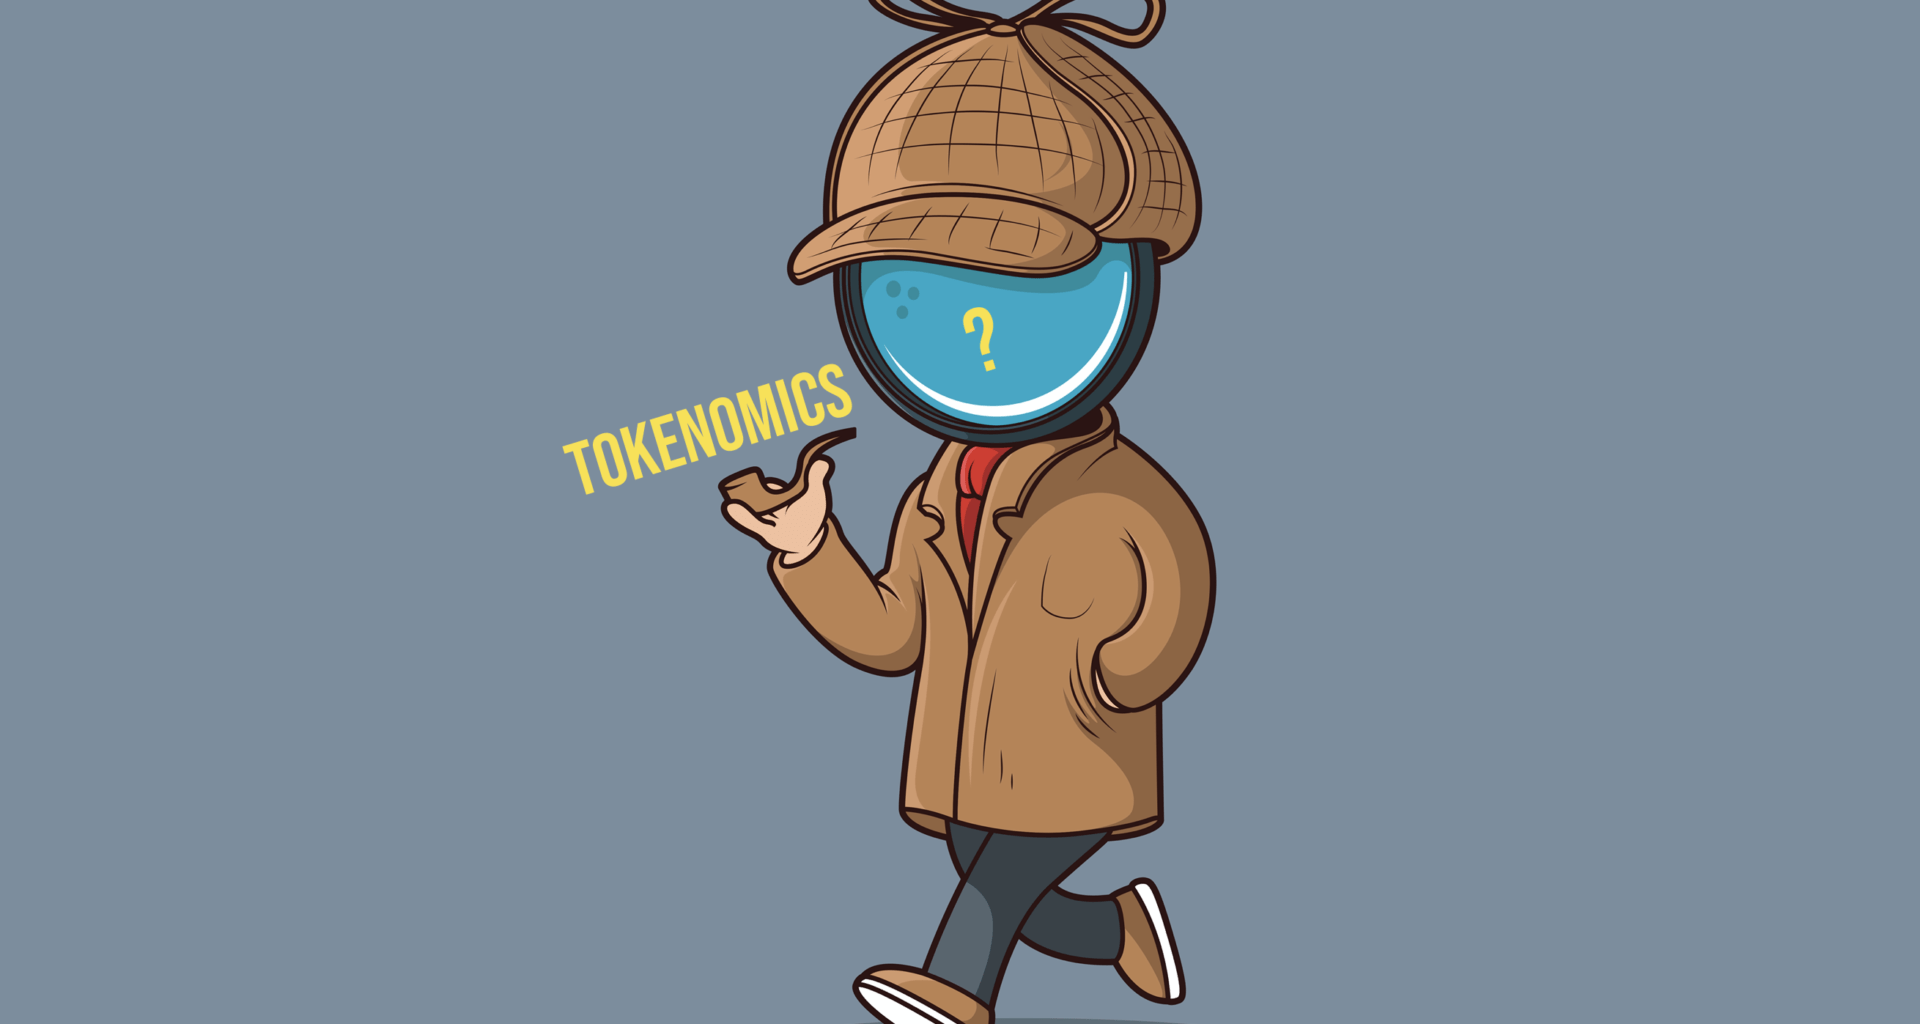 tokenomics définition